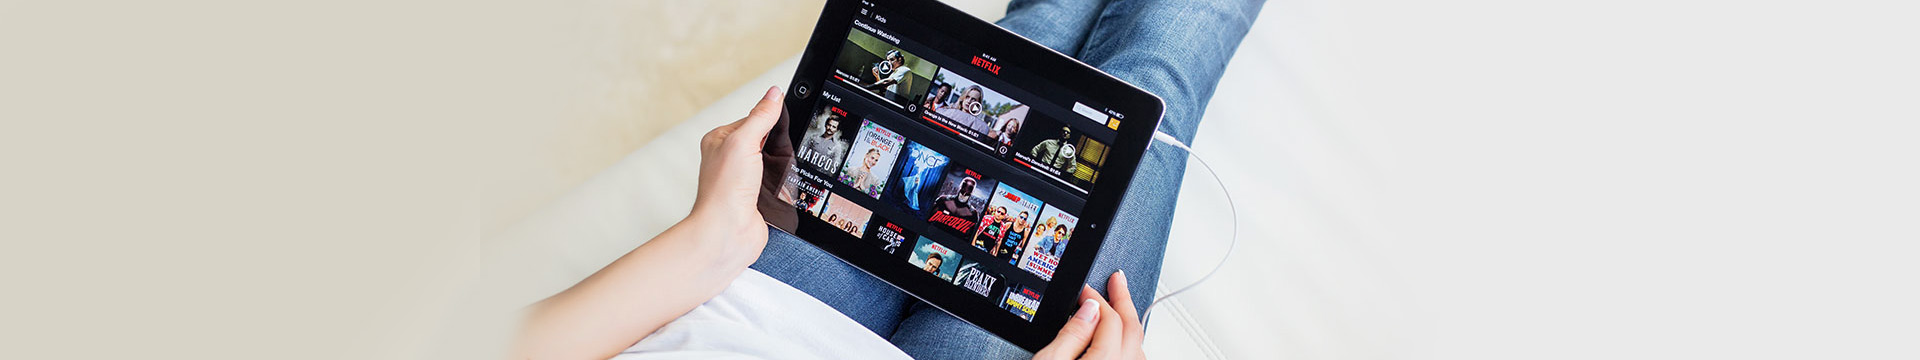 ฟุดฟิดฟอไฟ! 7 ซีรีส์ Netflix ไว้ฝึกภาษาอังกฤษแบบเพลิน ๆ